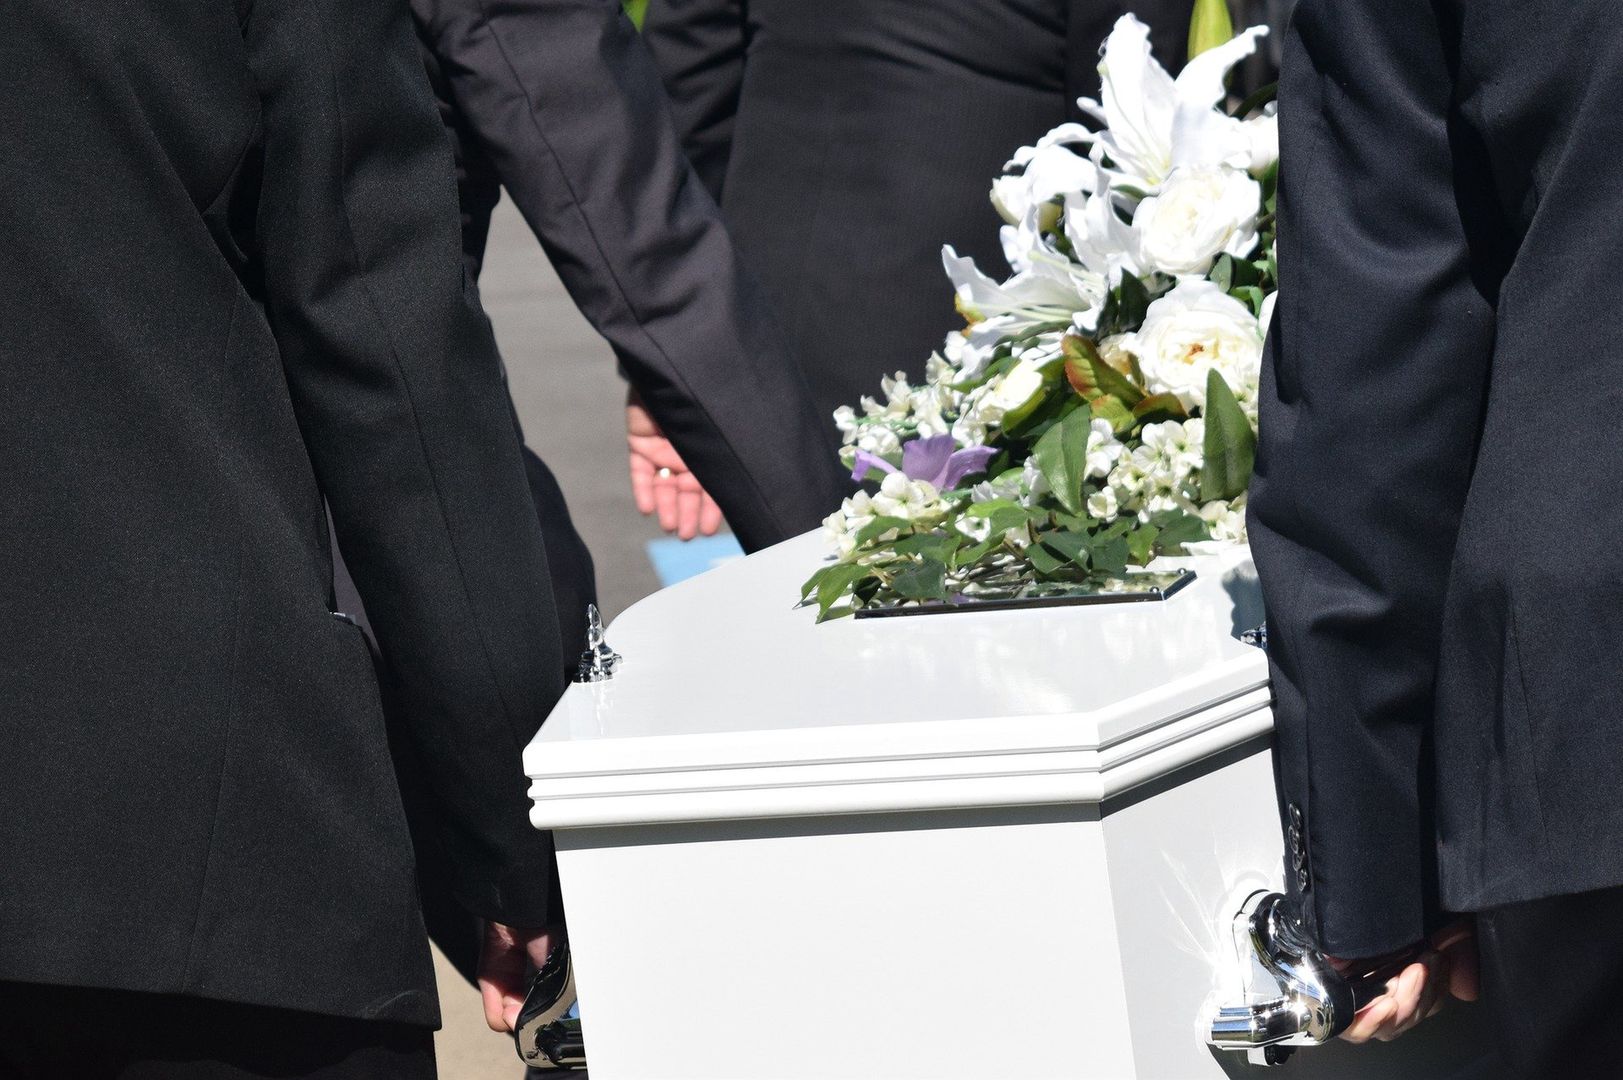 Skandal na pogrzebie. Widząc, co robi kobieta, żałobnicy wezwali policję